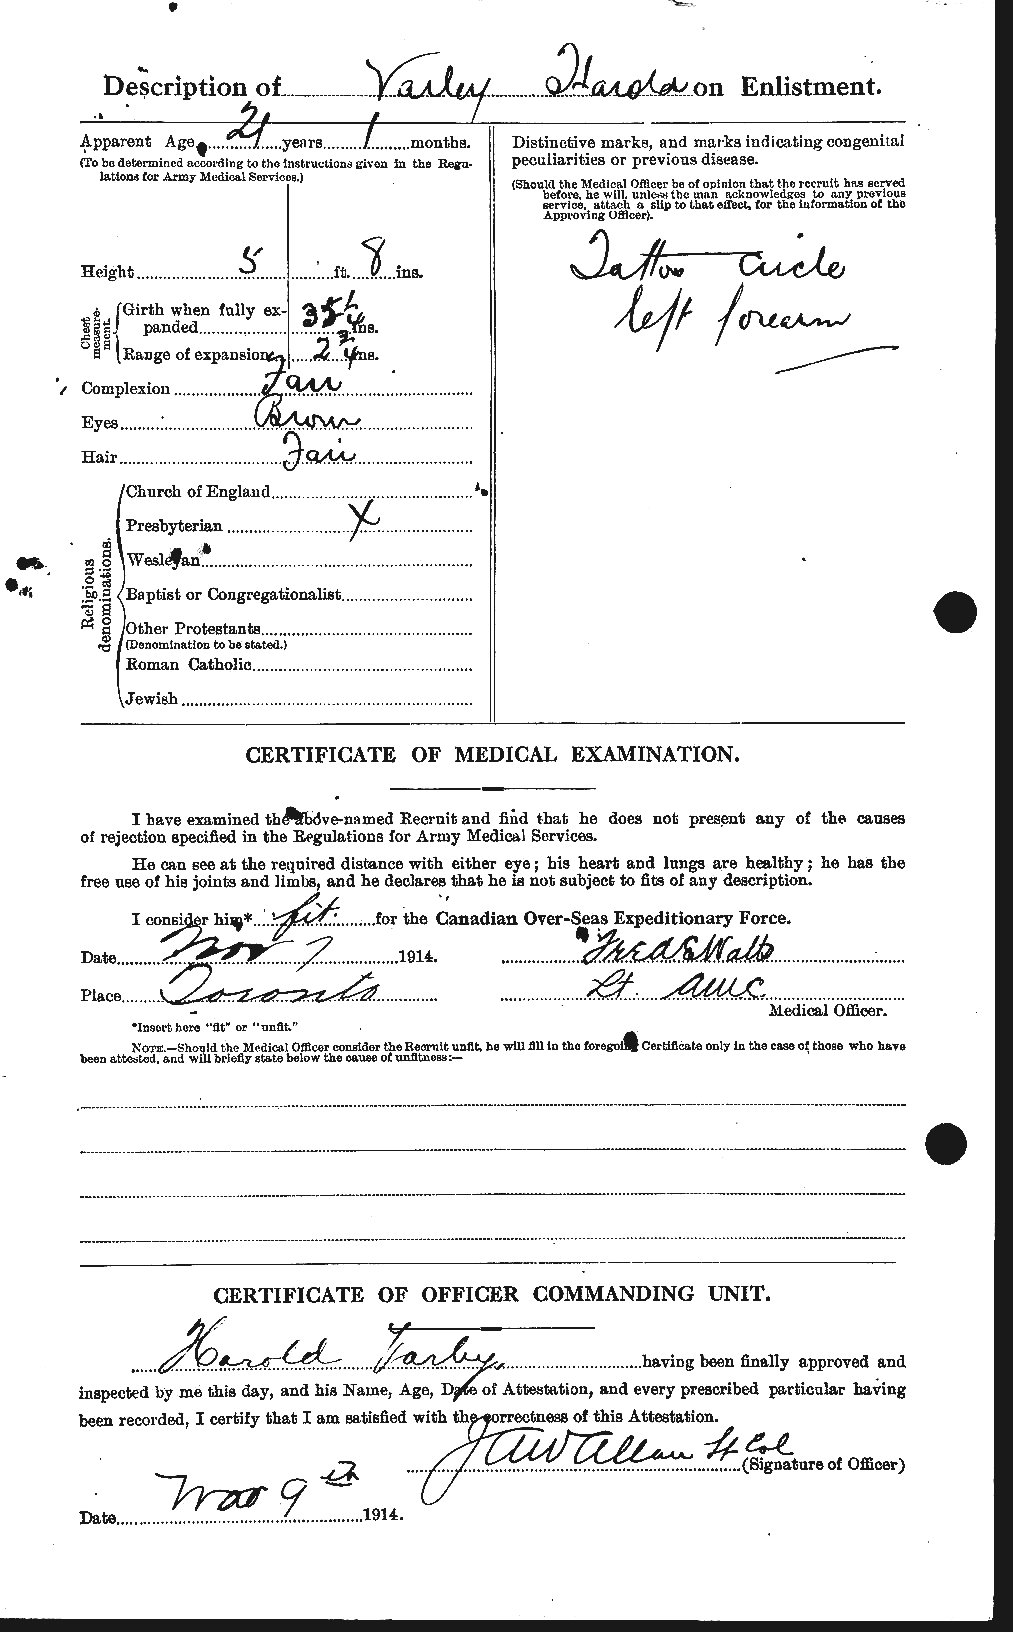 Dossiers du Personnel de la Première Guerre mondiale - CEC 647600b